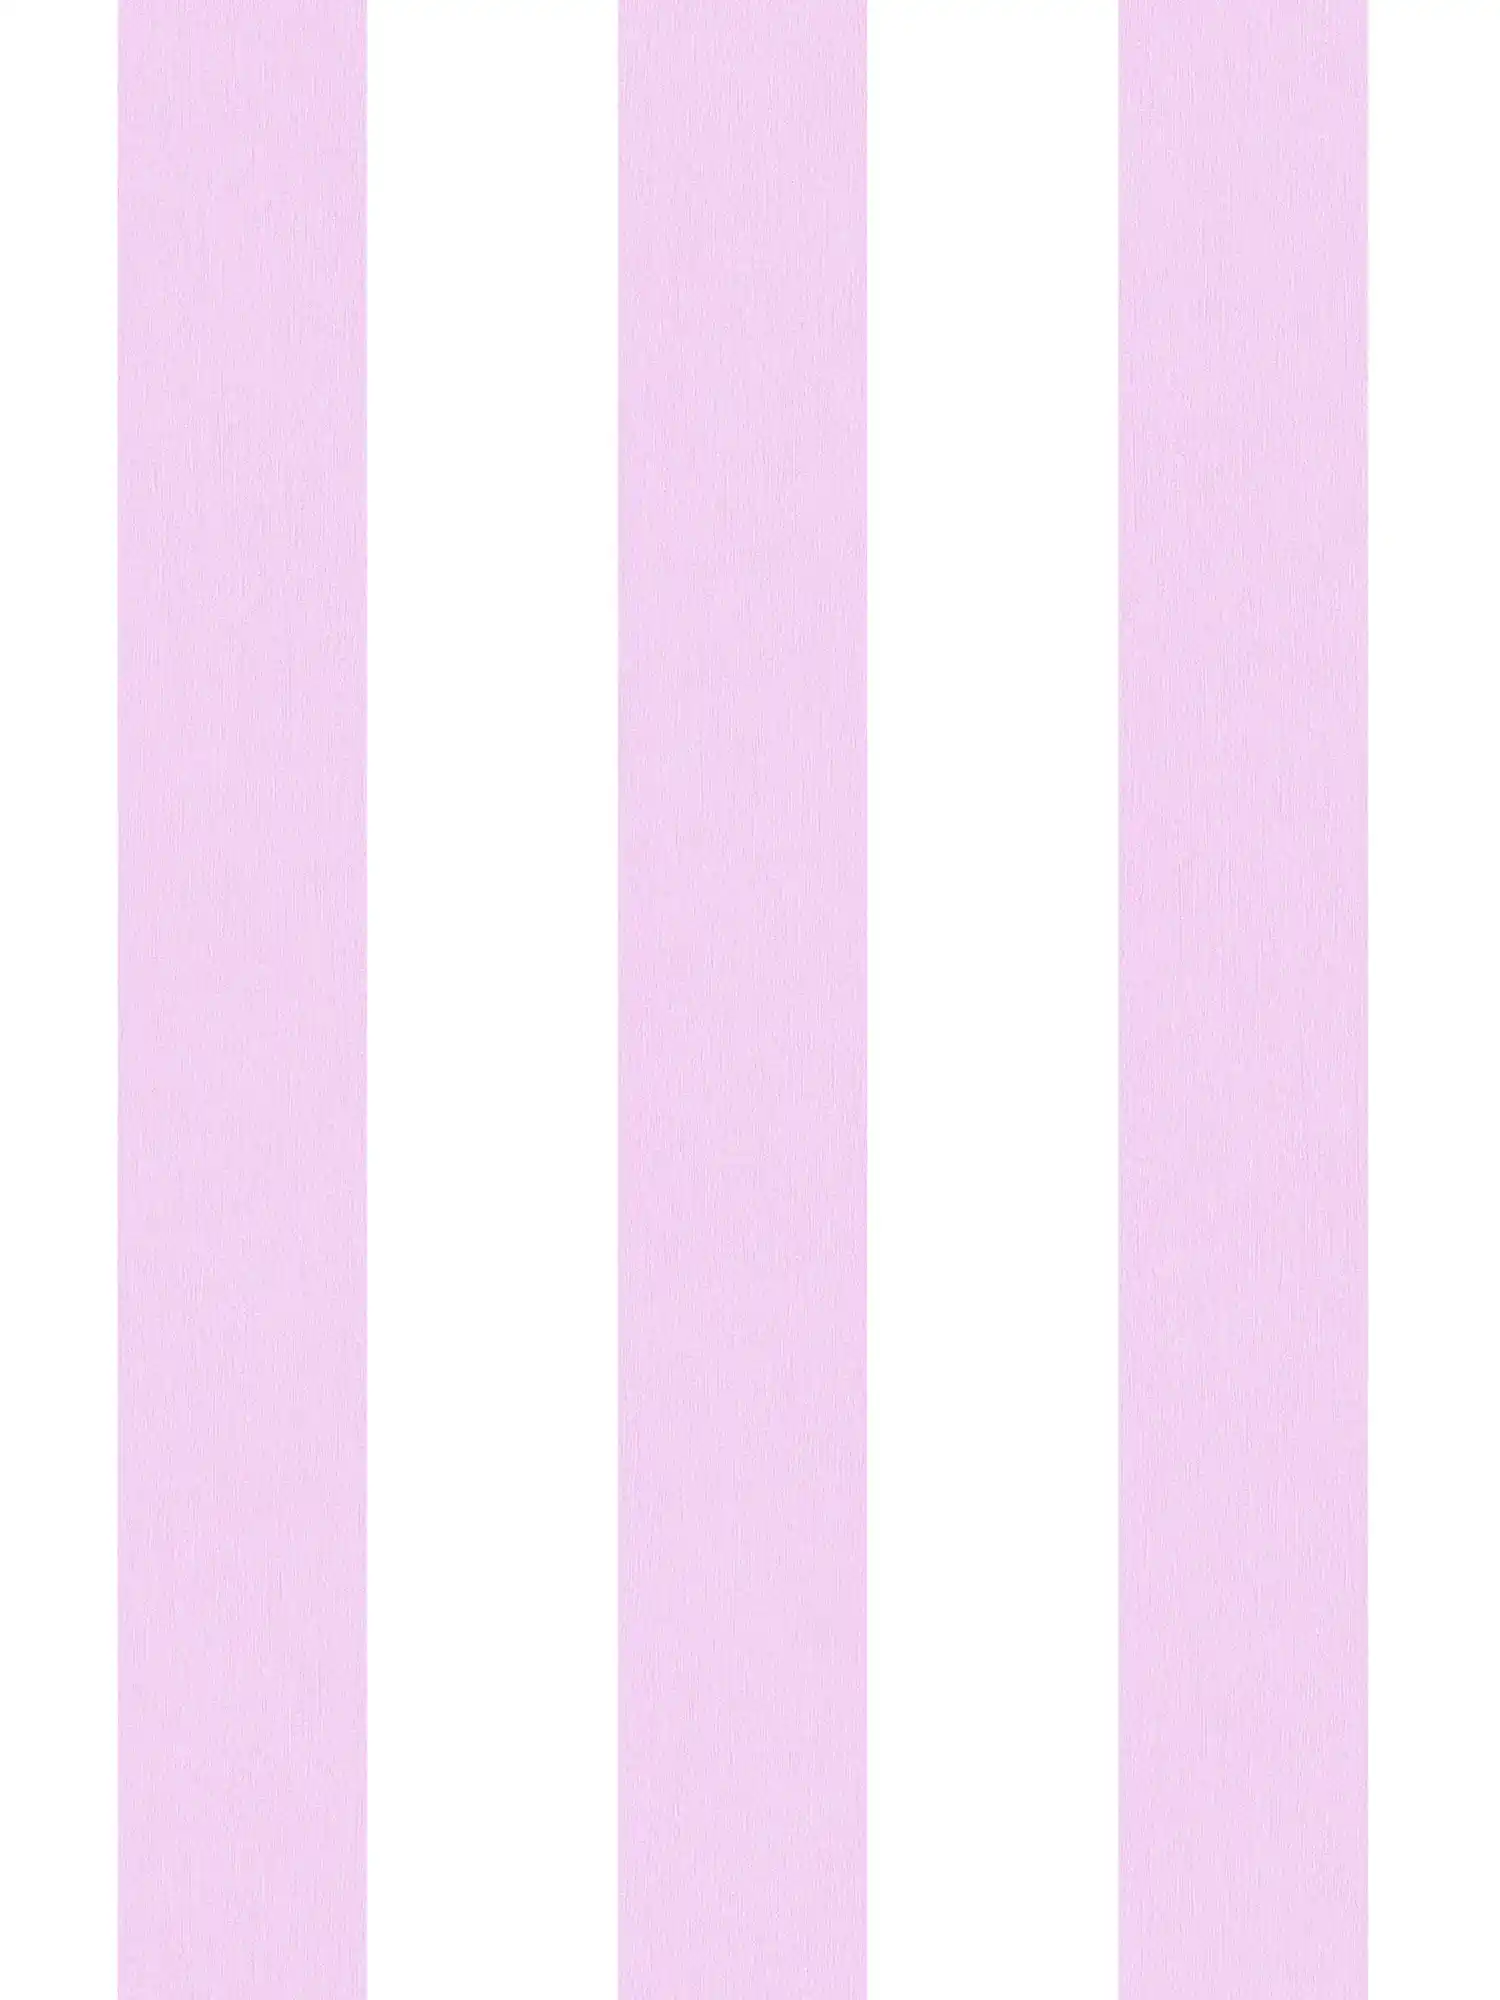         Tapete Kinderzimmer Mädchen vertikale Streifen – Rosa, Weiß
    